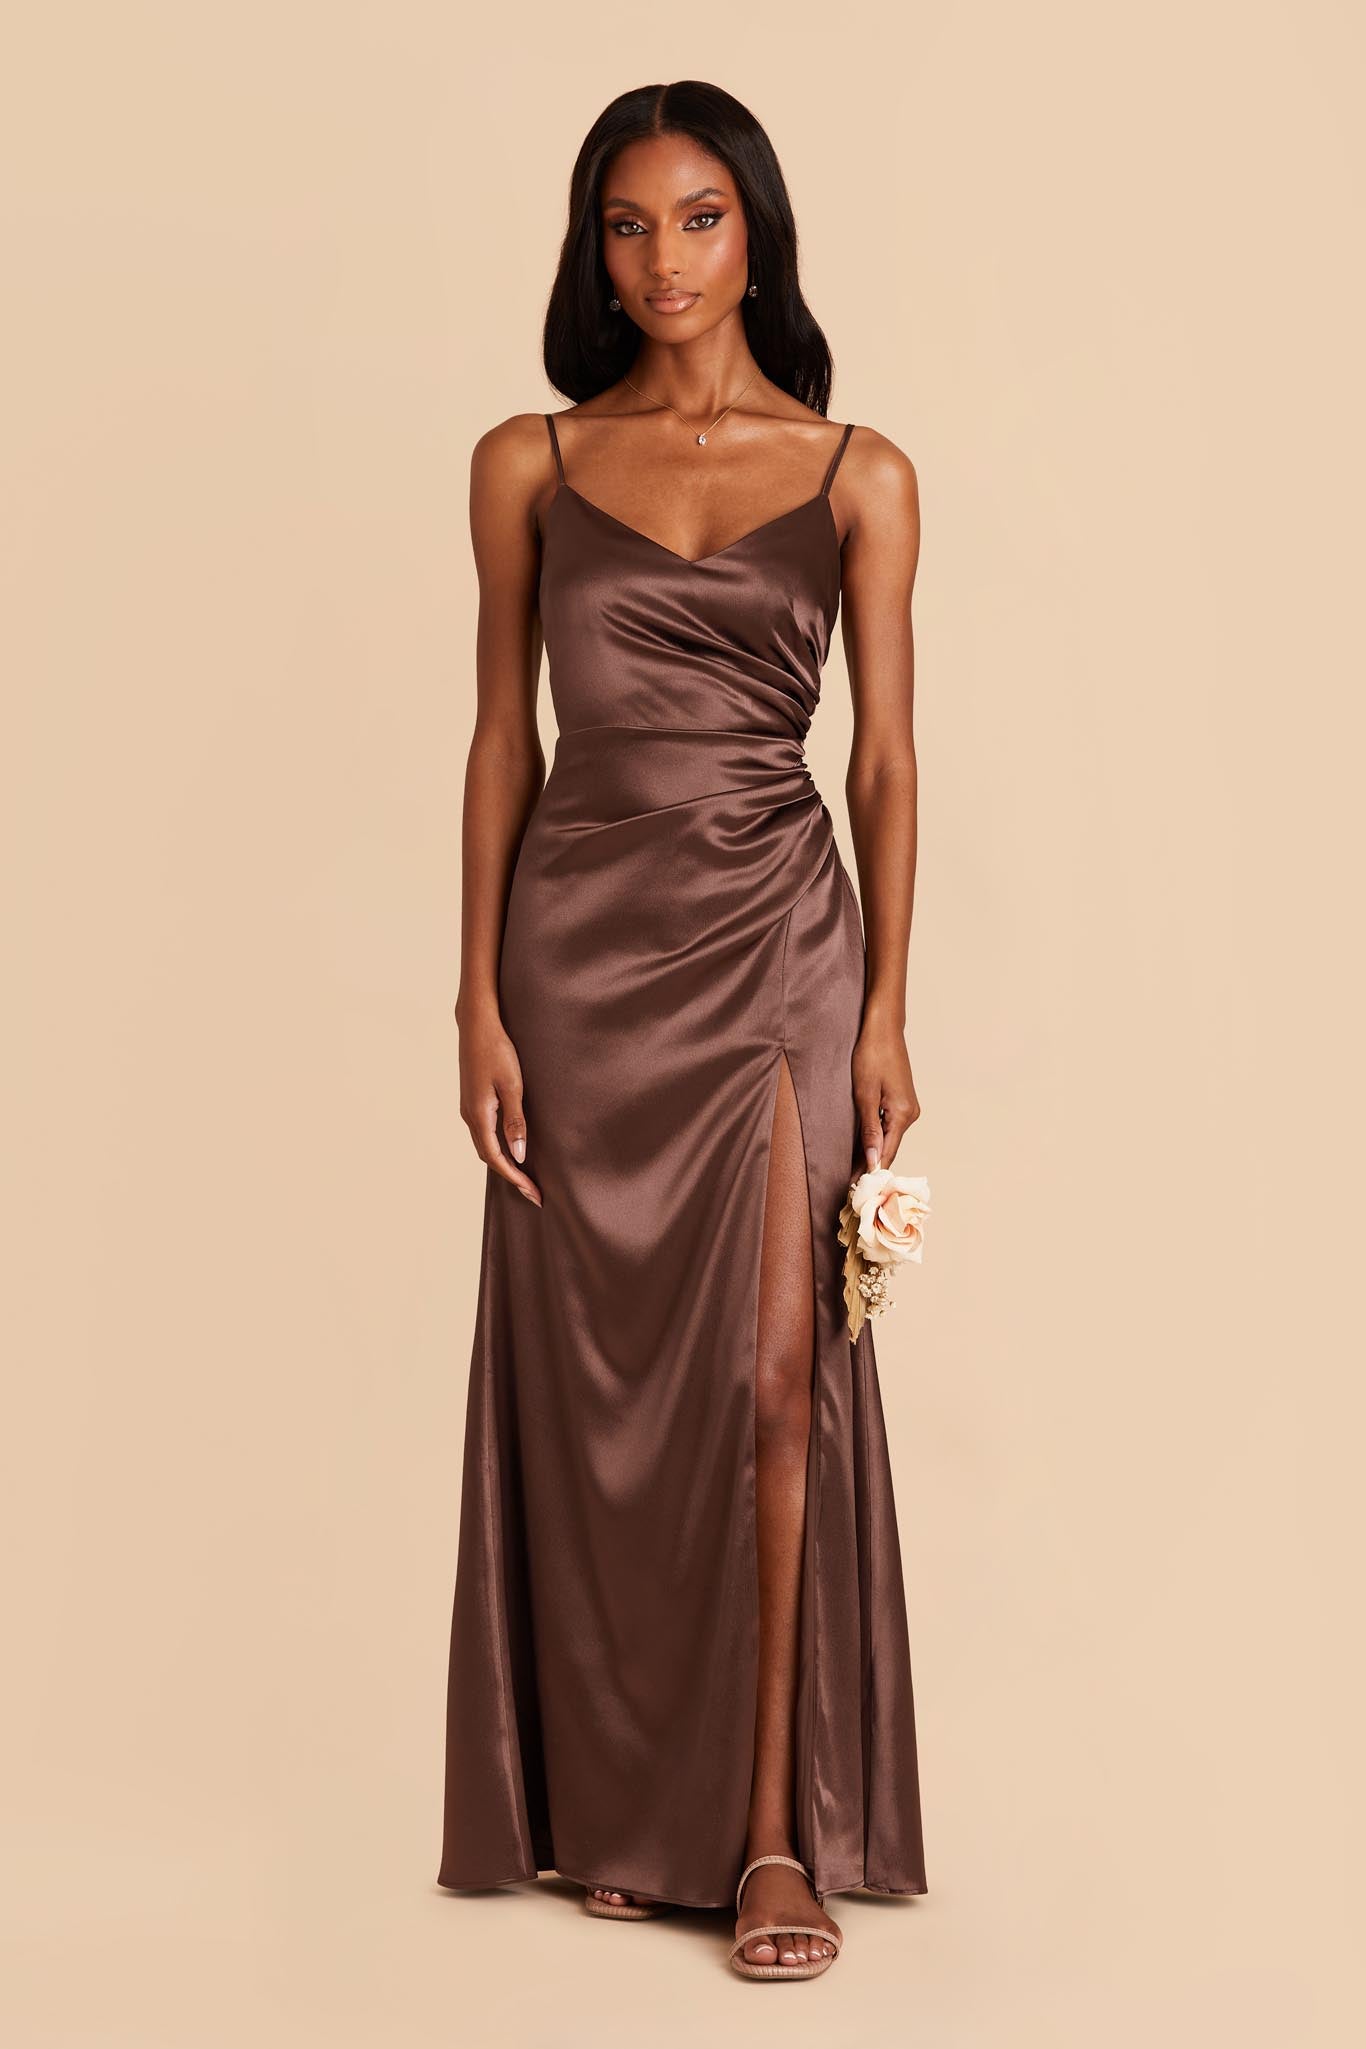 Chocolate Brown Catherine Shiny Satin Dress by Birdy Grey